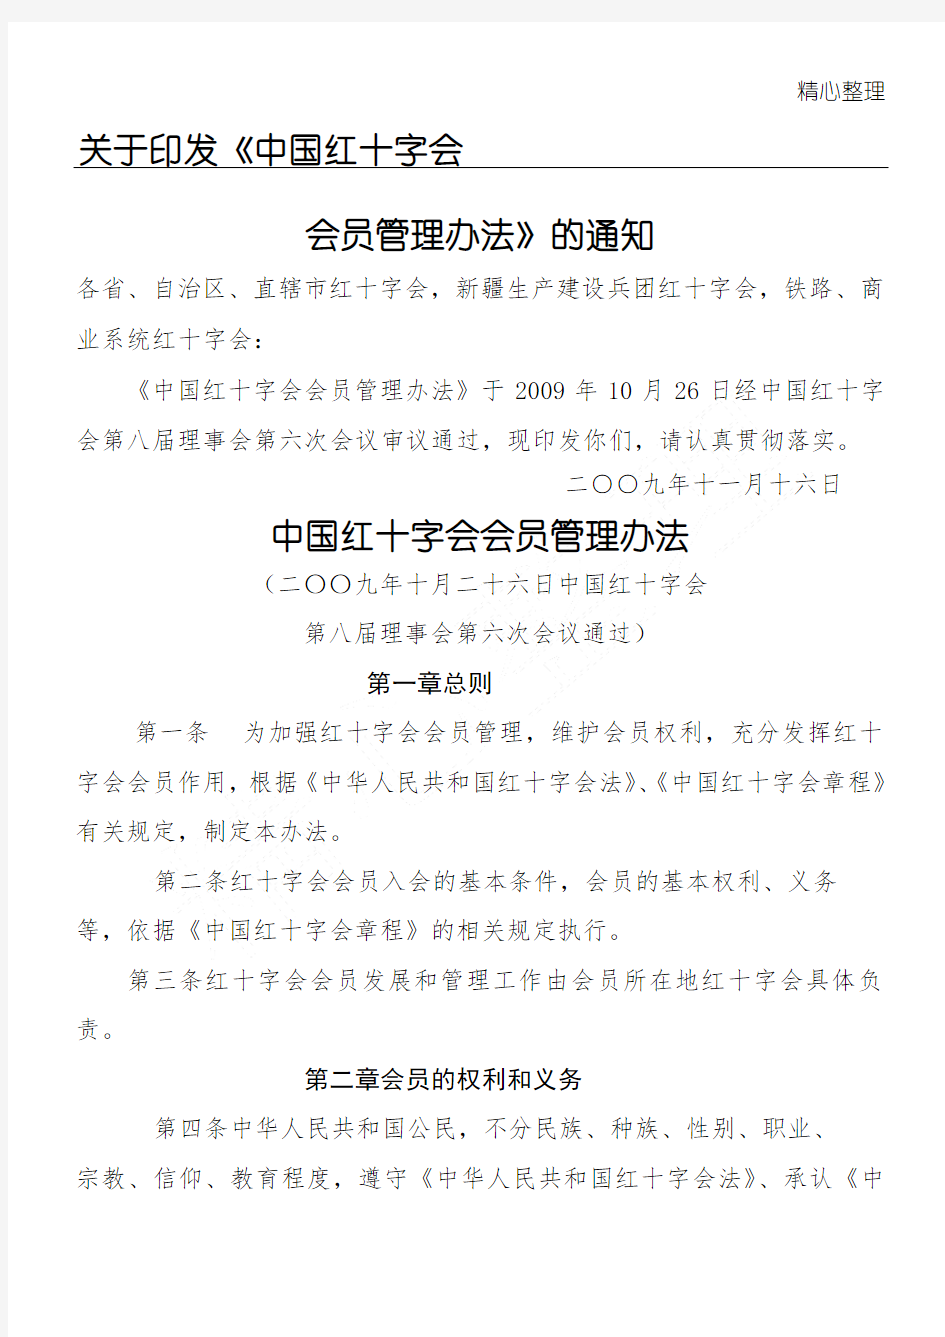 中国红十字(精选)会会员管理办法